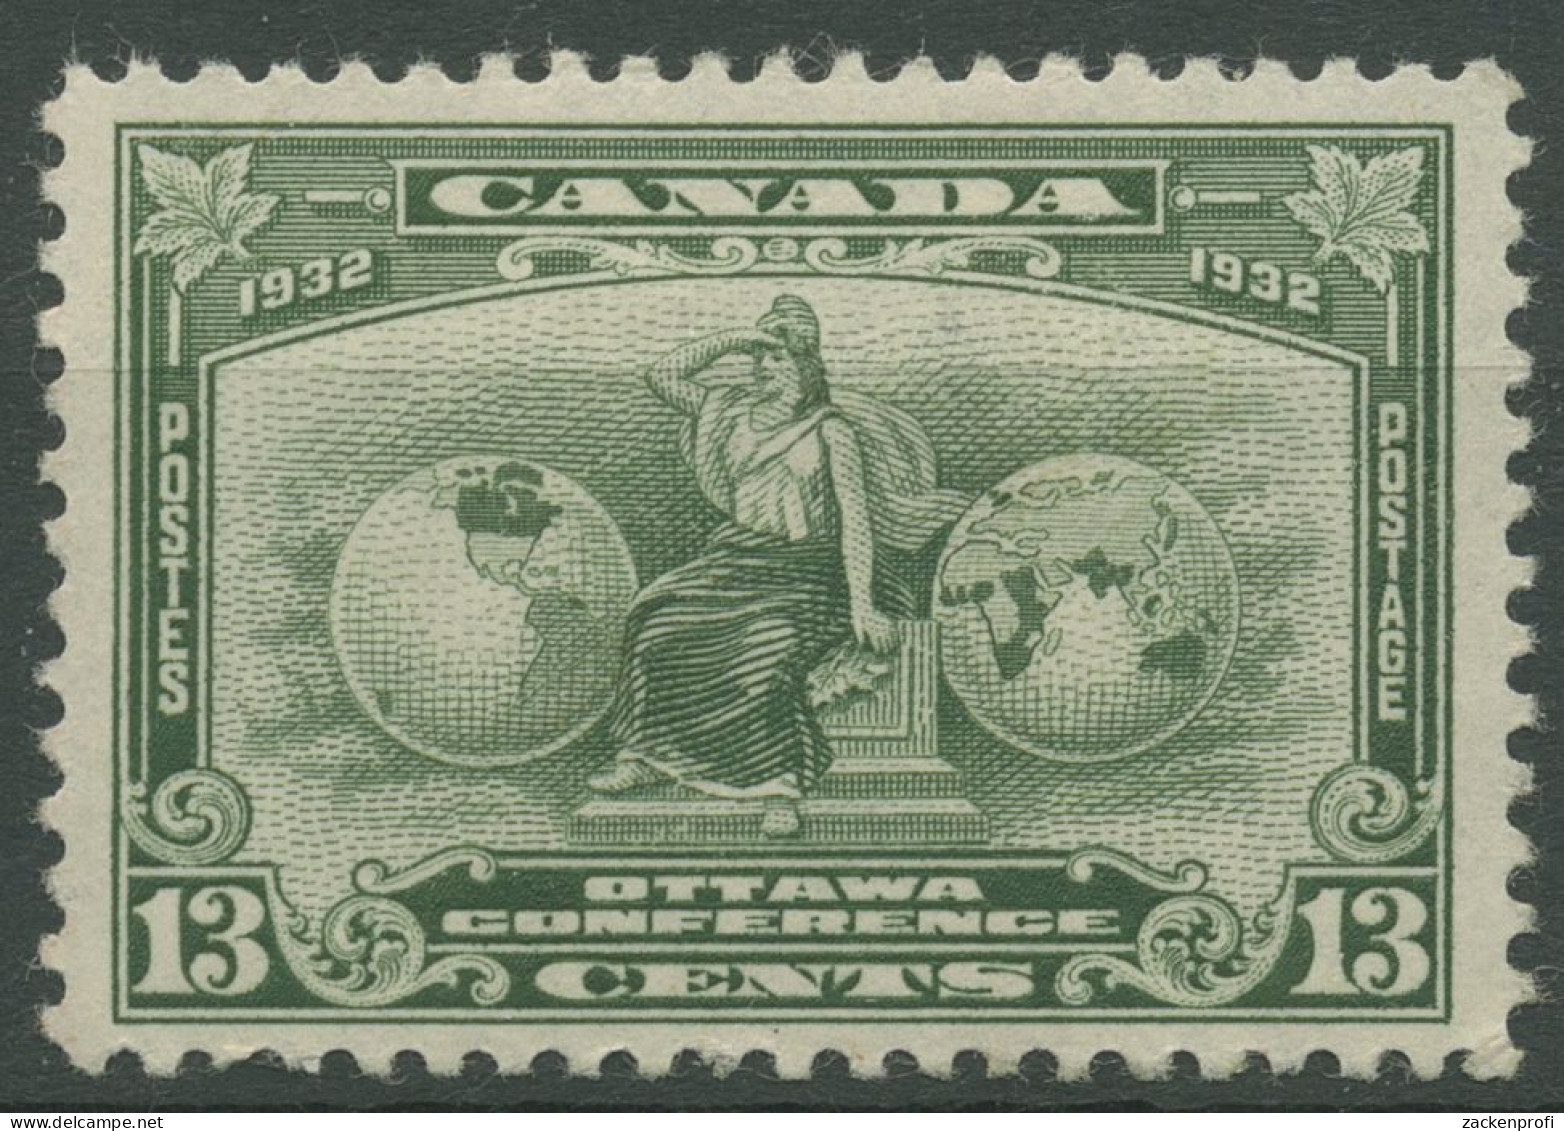 Kanada 1932 Wirtschaftskonferenz In Ottawa Allegorie 161 Mit Falz, Haftstellen - Nuovi